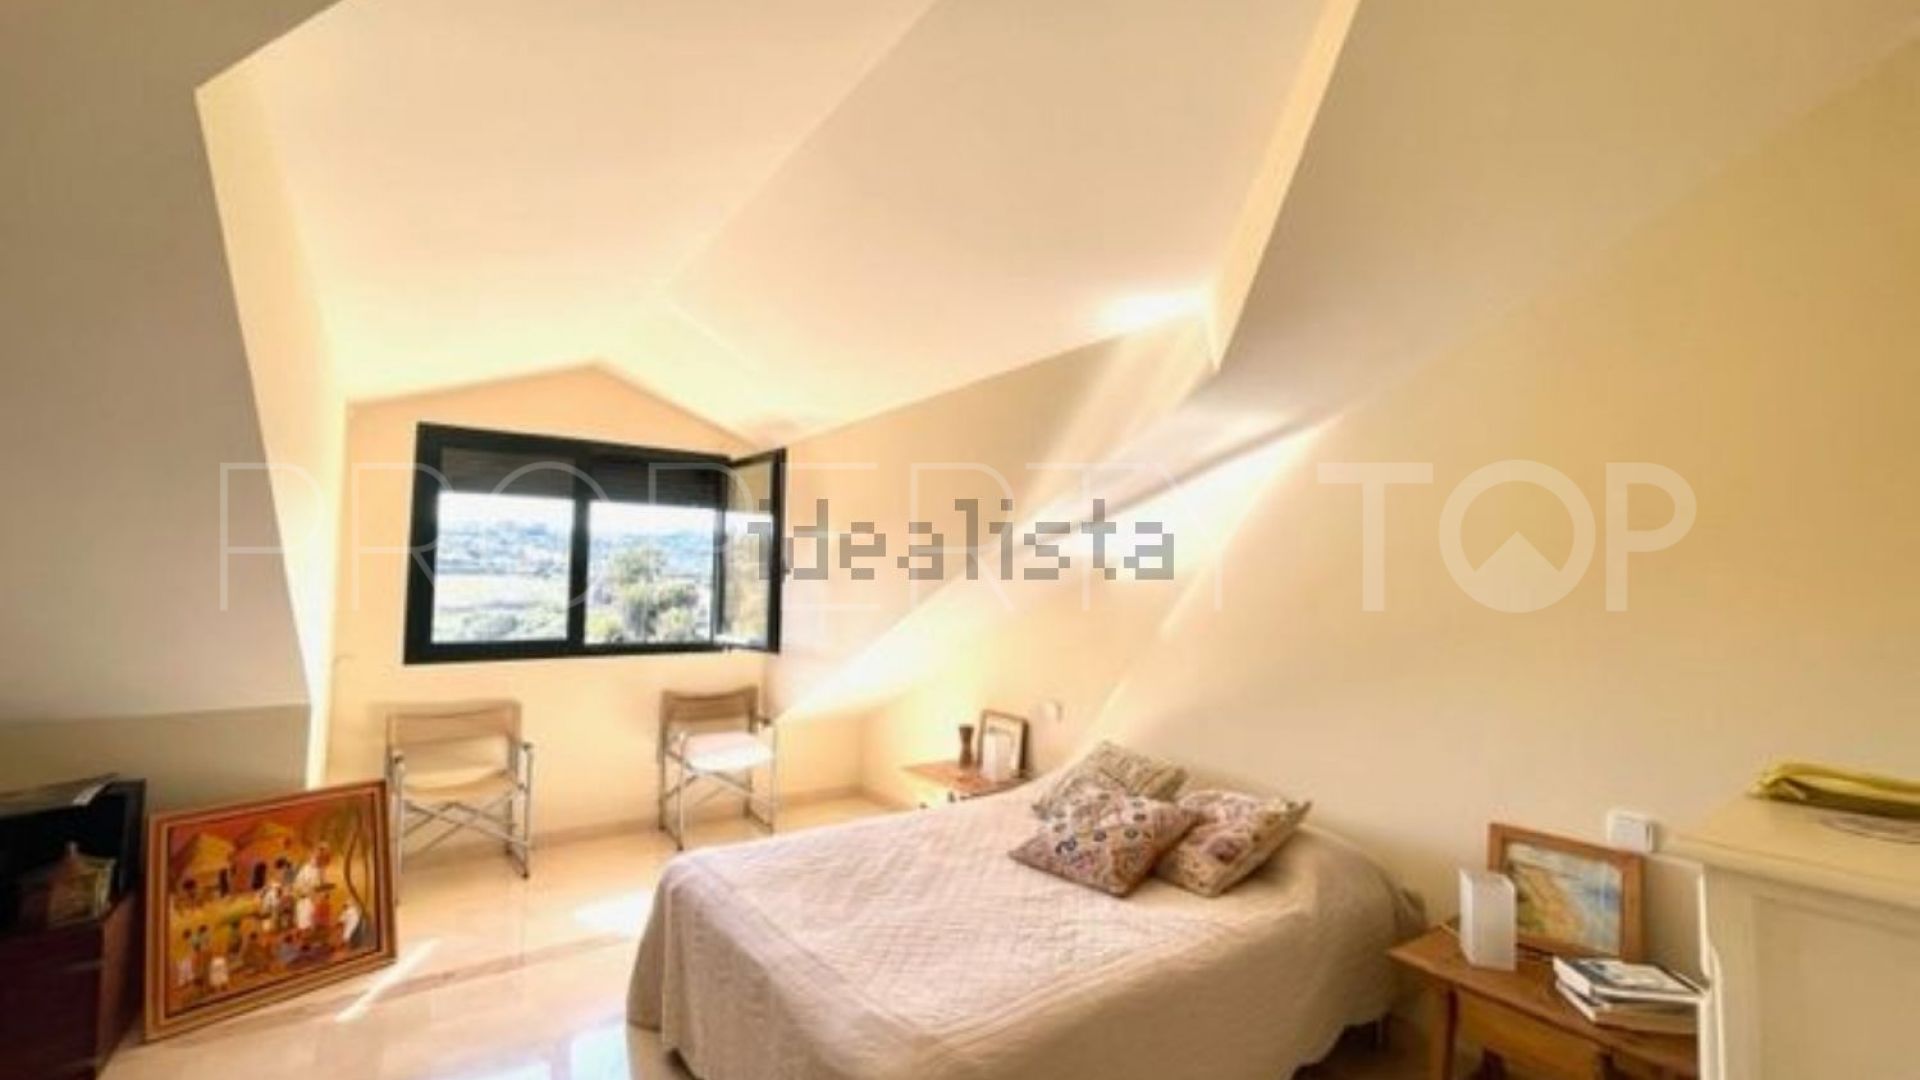 Villa pareada con 4 dormitorios en venta en Sotogolf